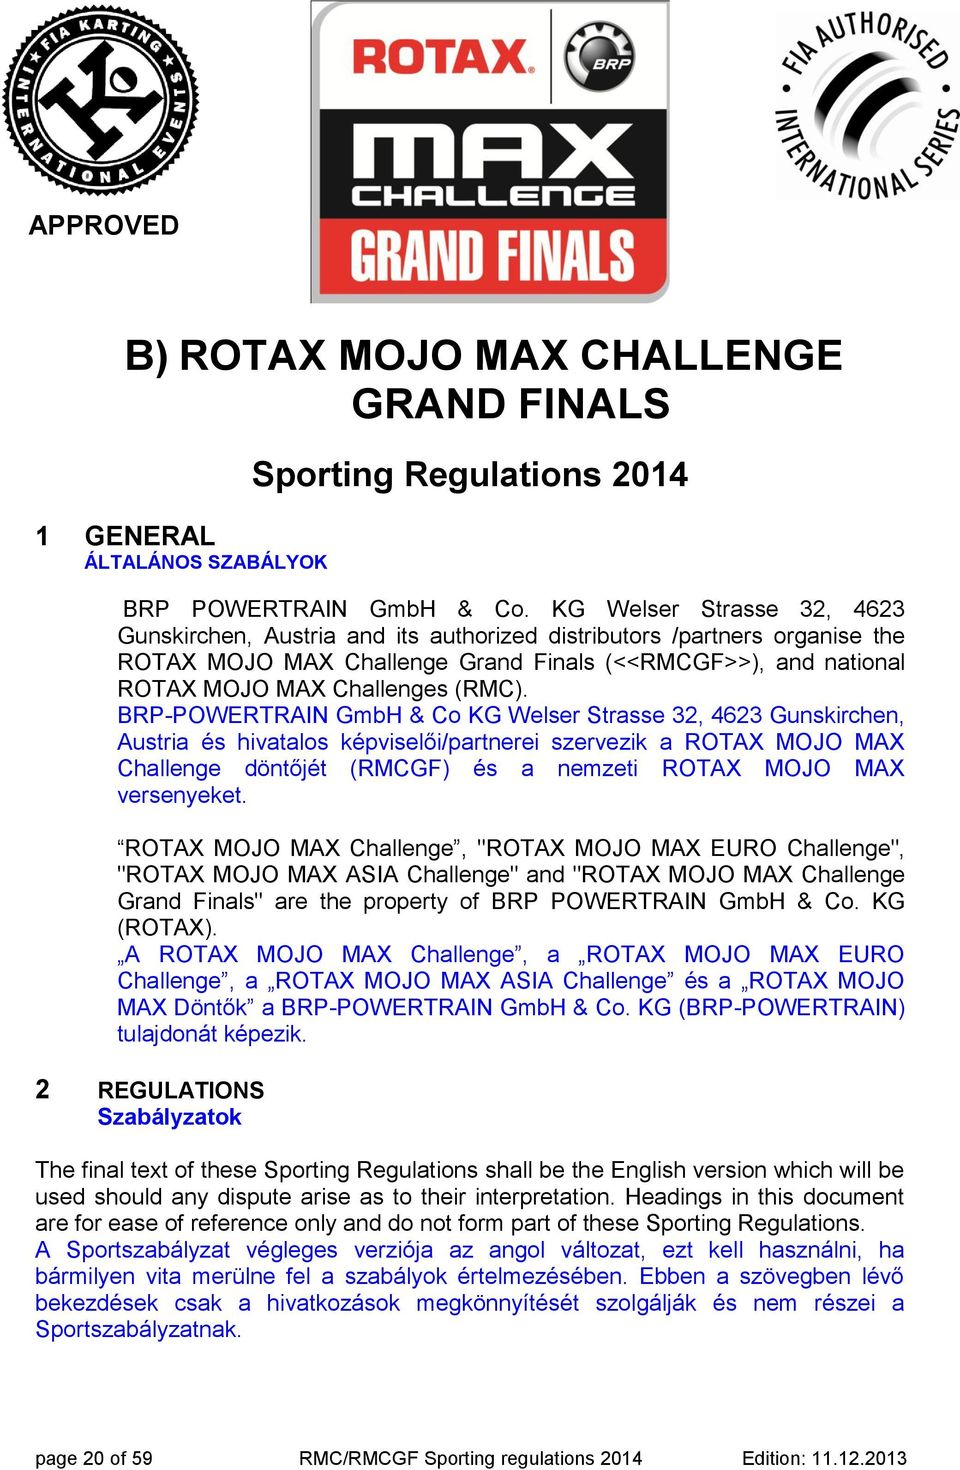 BRP-POWERTRAIN GmbH & Co KG Welser Strasse 32, 4623 Gunskirchen, Austria és hivatalos képviselői/partnerei szervezik a ROTAX MOJO MAX Challenge döntőjét (RMCGF) és a nemzeti ROTAX MOJO MAX